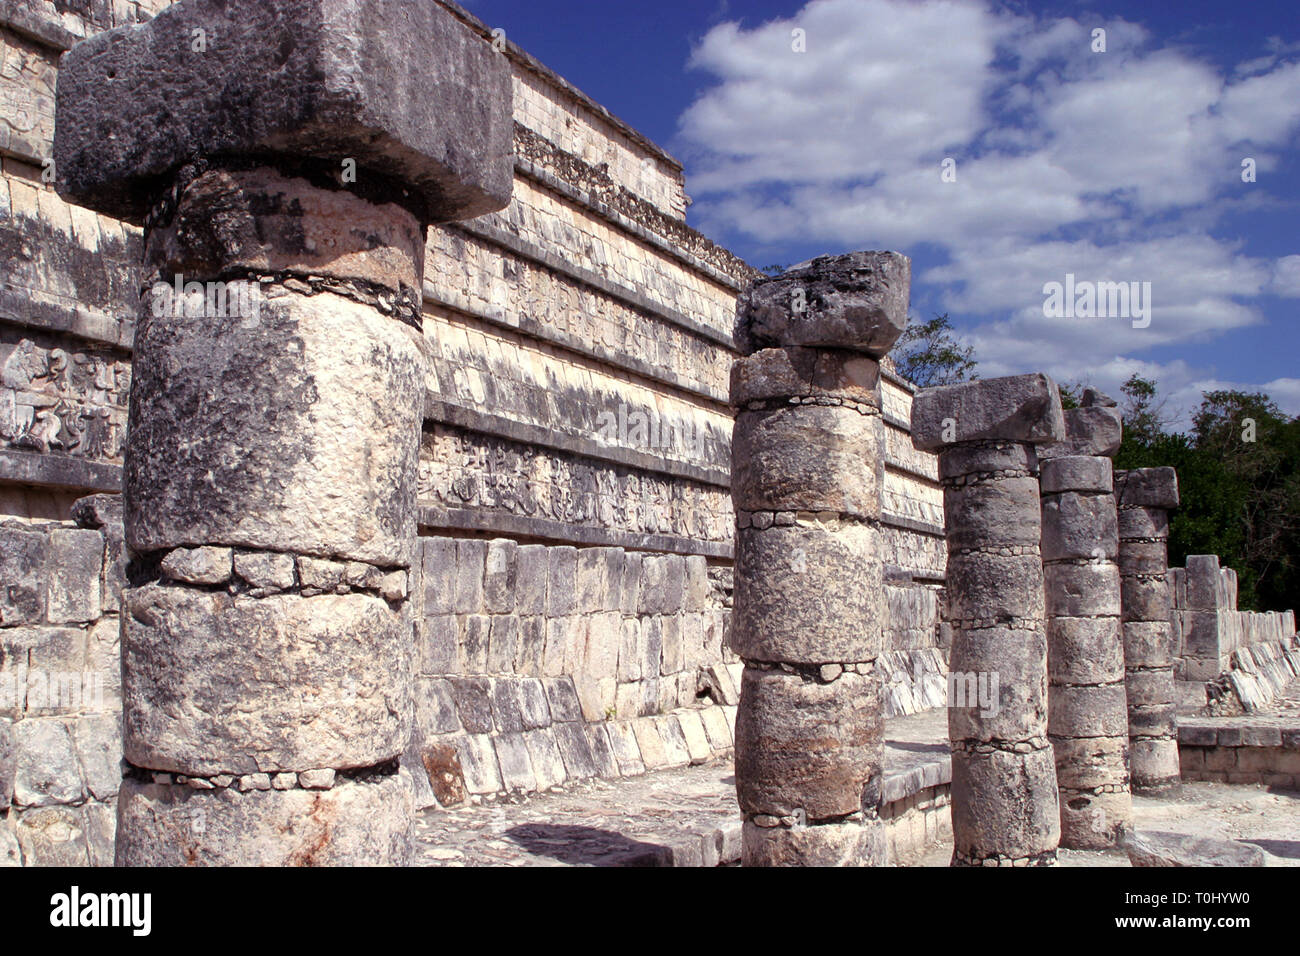 Zona arqueologica de Chichen Itza Zona arqueológica    Chichén ItzáChichén Itzá maya: (Chichén) Boca del pozo;   de los (Itzá) brujos de agua.   Es uno de los principales sitios arqueológicos de la   península de Yucatán, en México, ubicado en el municipio de Tinum.  *Photo:*©Francisco* Morales/DAMMPHOTO.COM/NORTEPHOTO Stock Photo